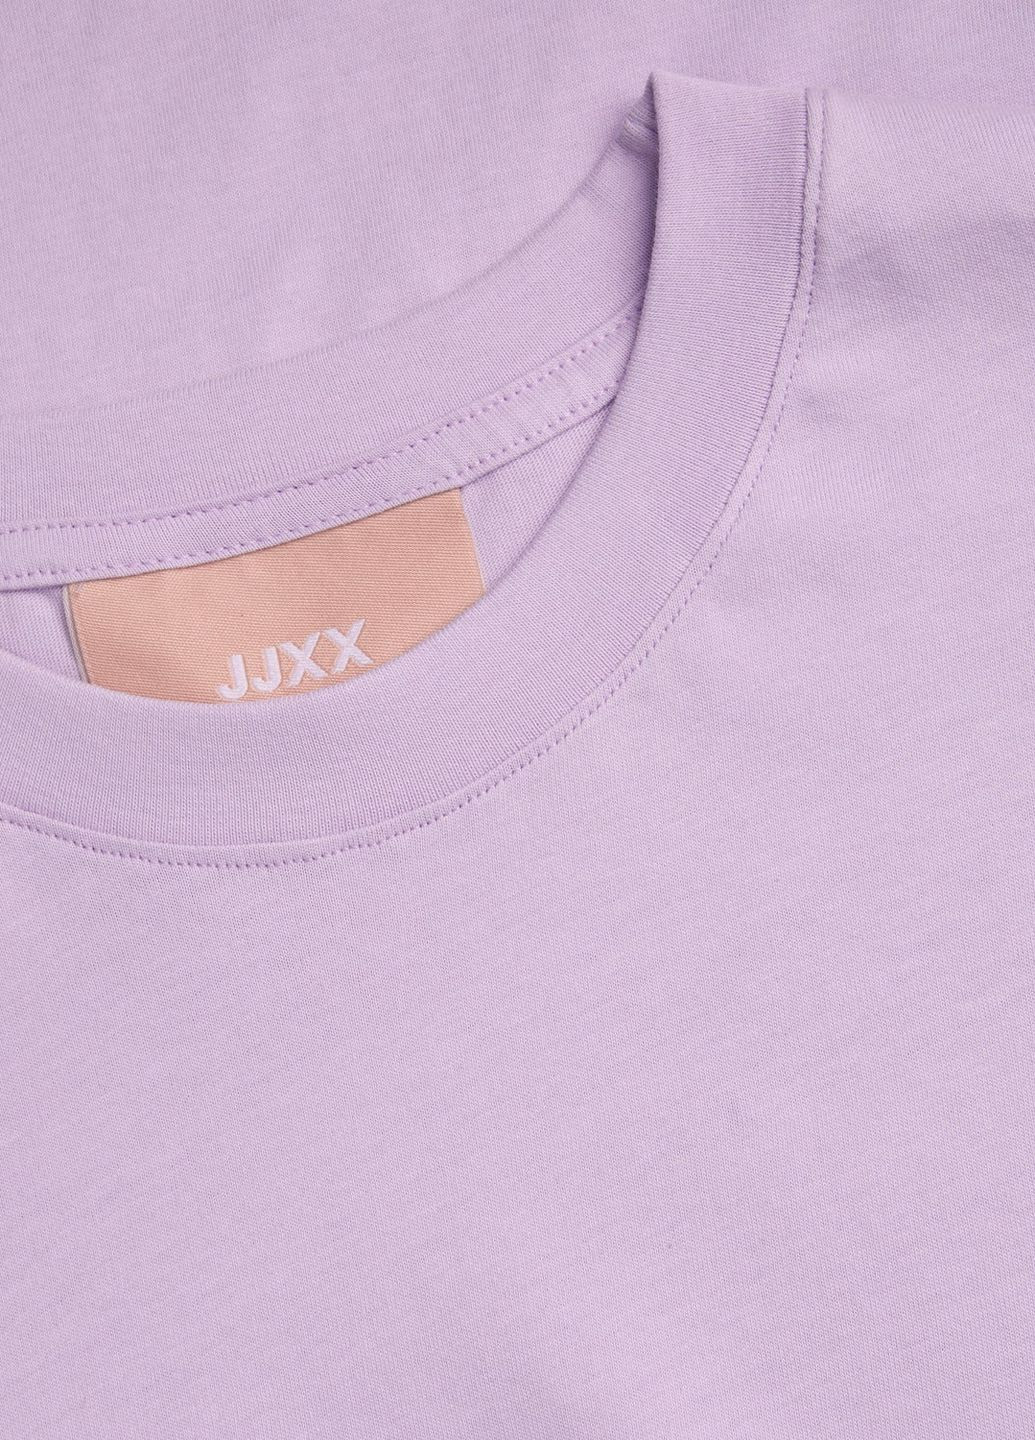 Сиреневая футболка basic,сиреневый,jjxx Jack & Jones